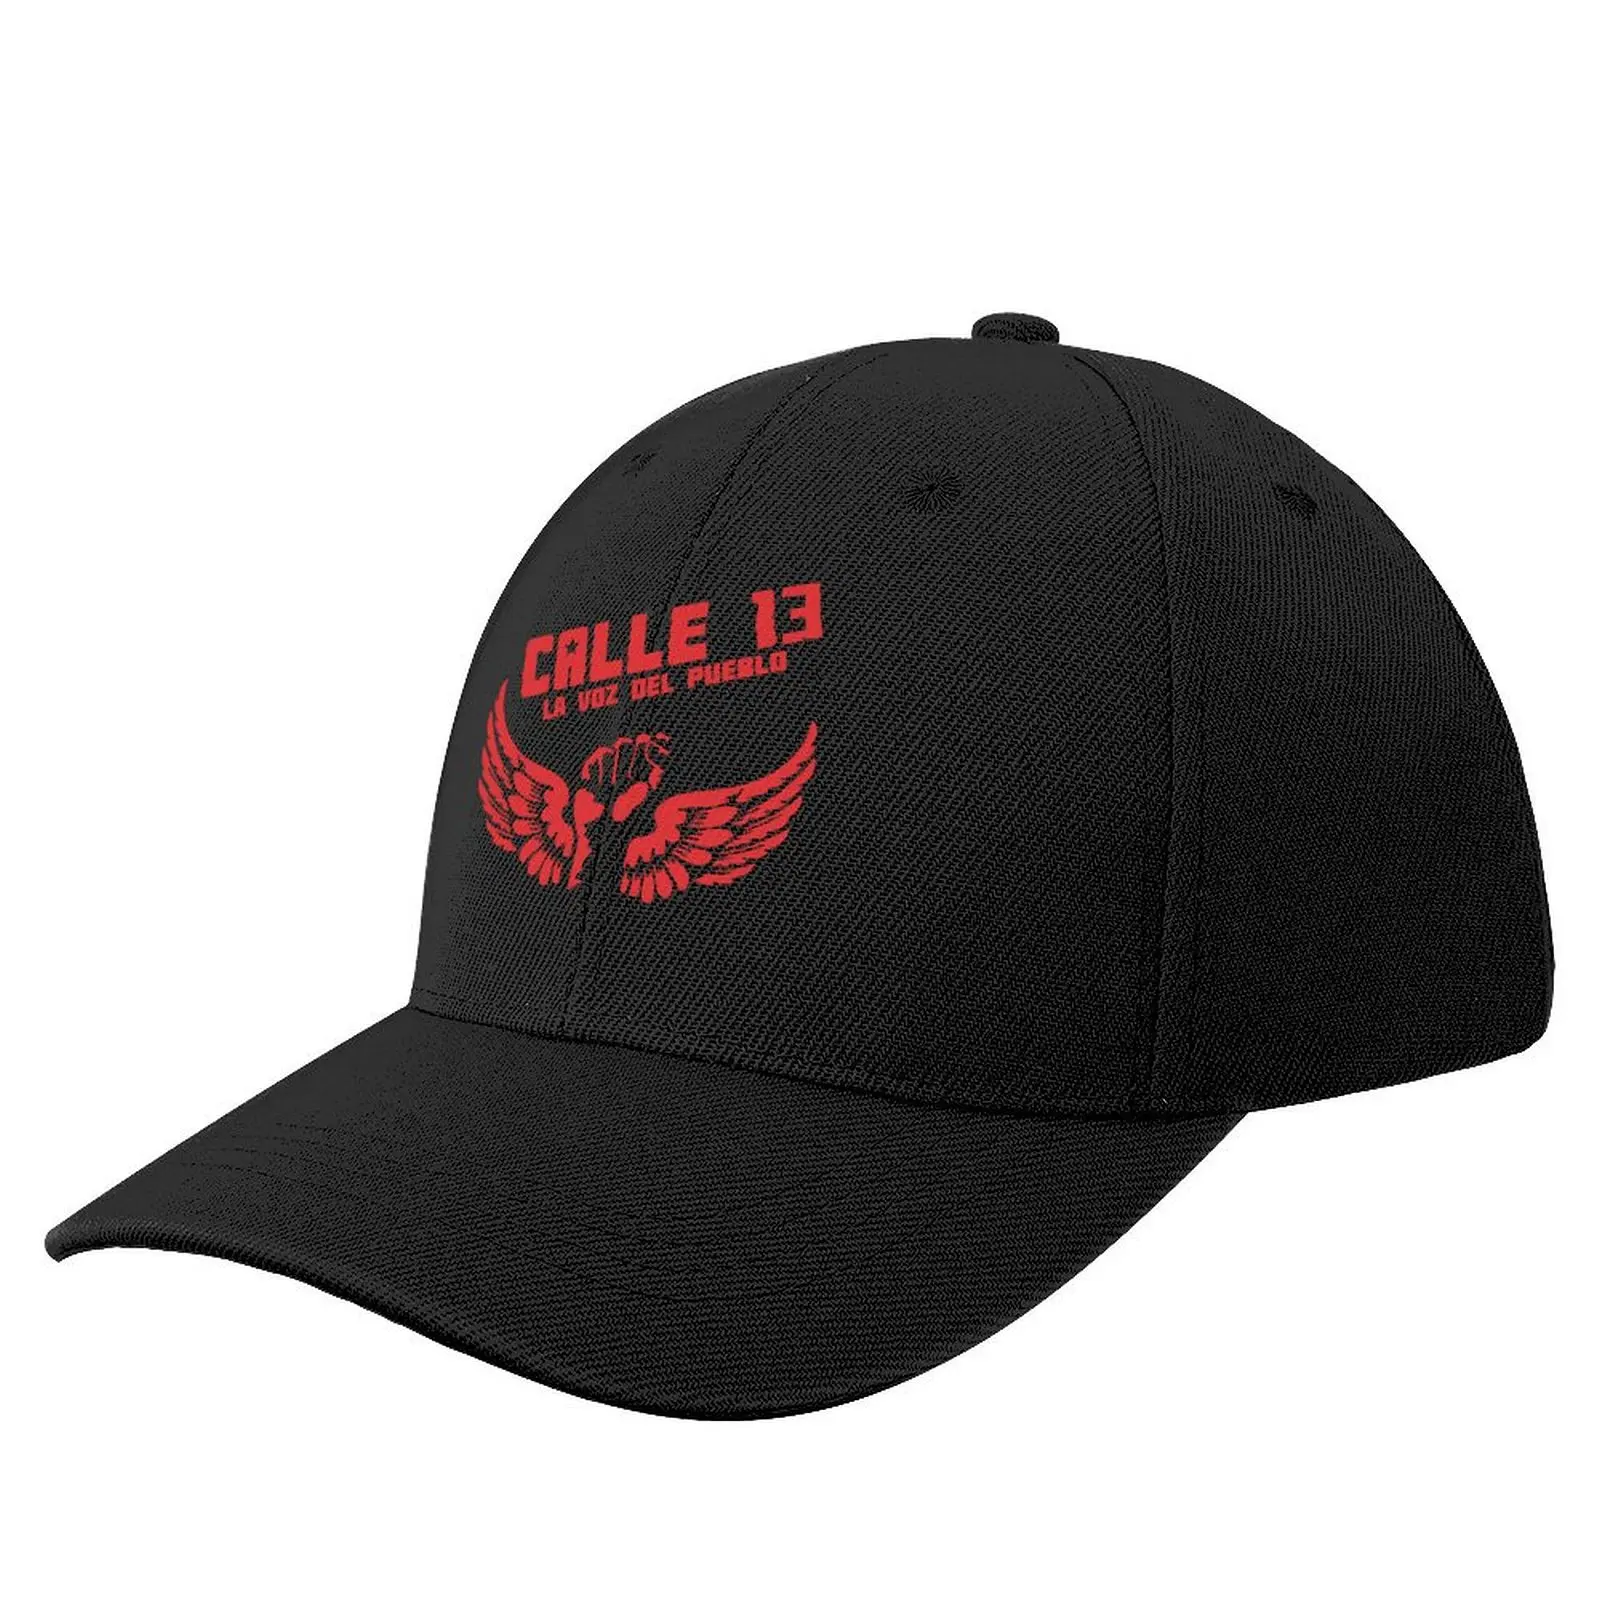 

Copy of Residente, Calle 13, bunny DZ15V Baseball Cap Trucker Cap Hat Man For The Sun Caps Women Men's